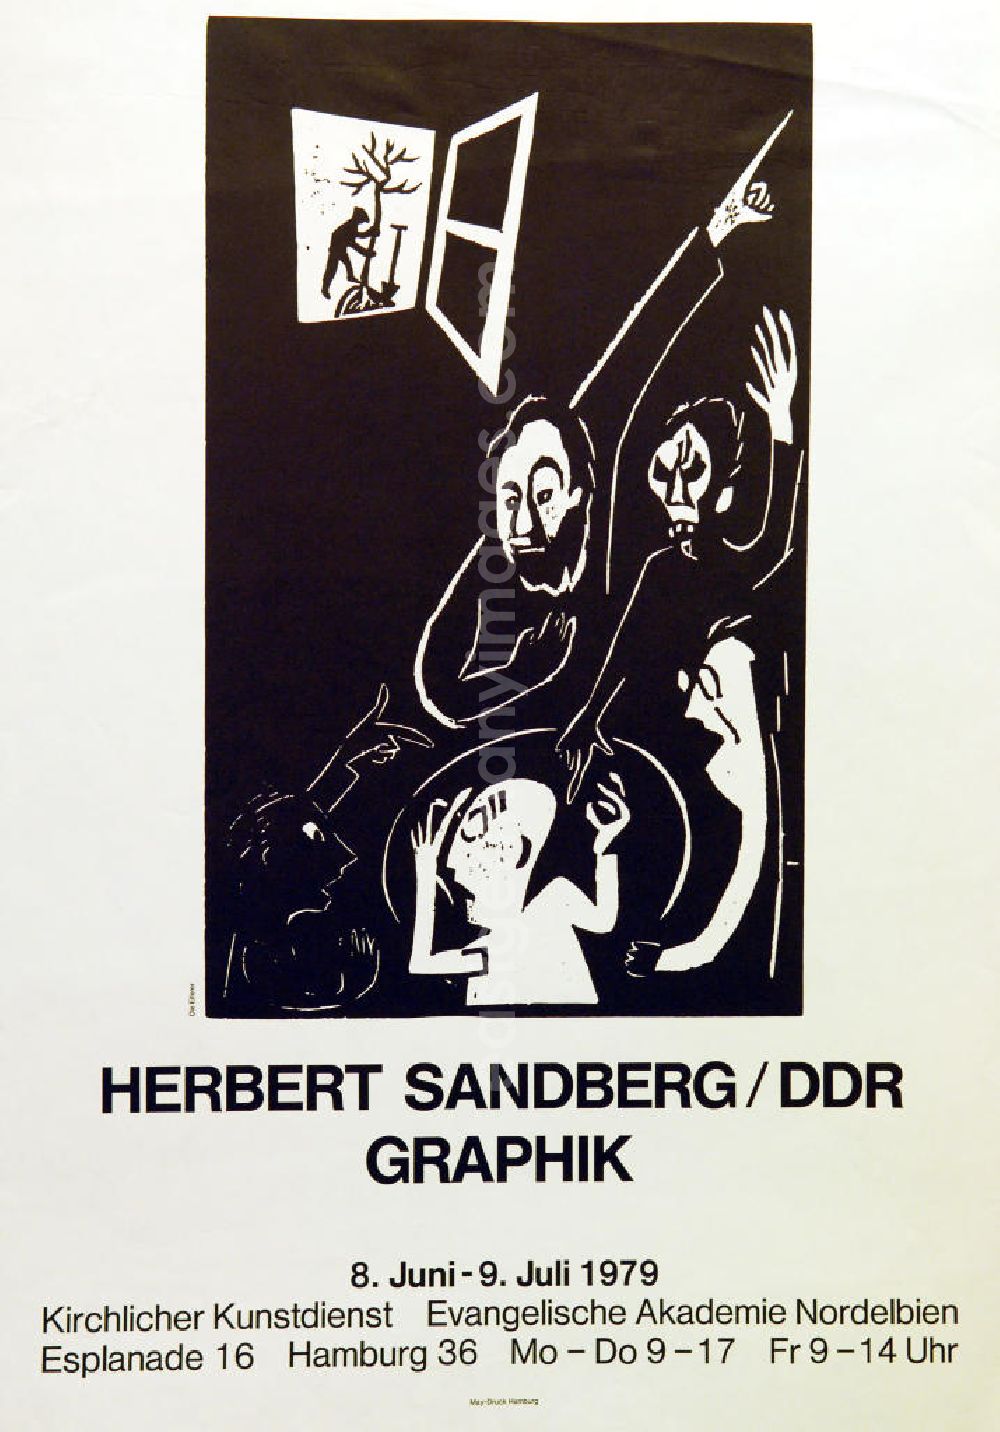 GDR image archive: Berlin - Plakat der Ausstellung Herbert Sandberg/DDR Graphik vom 08.06.-09.